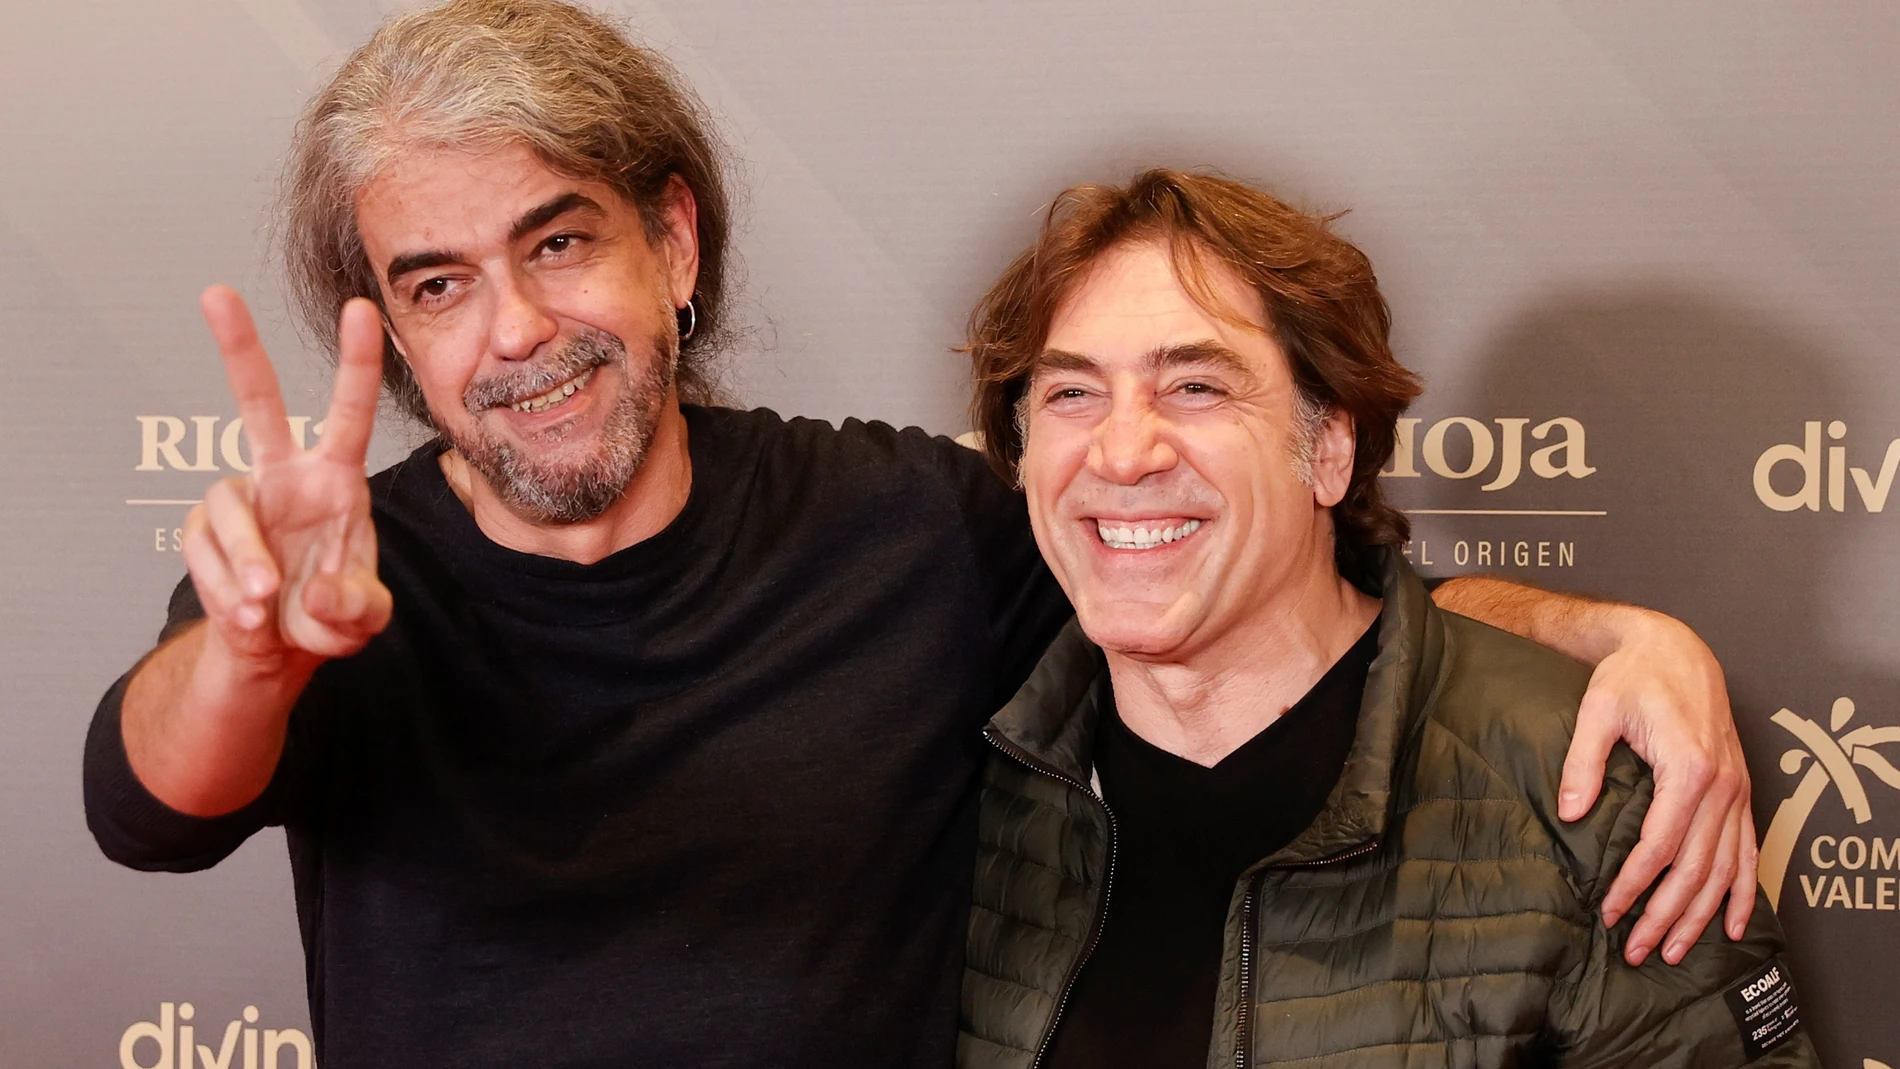 El director Fernando León de Aranoa junto al actor Javier Bardem posan para los medios tras la lectura de la lista de finalistas en las 28 categorías de los Premios Goya